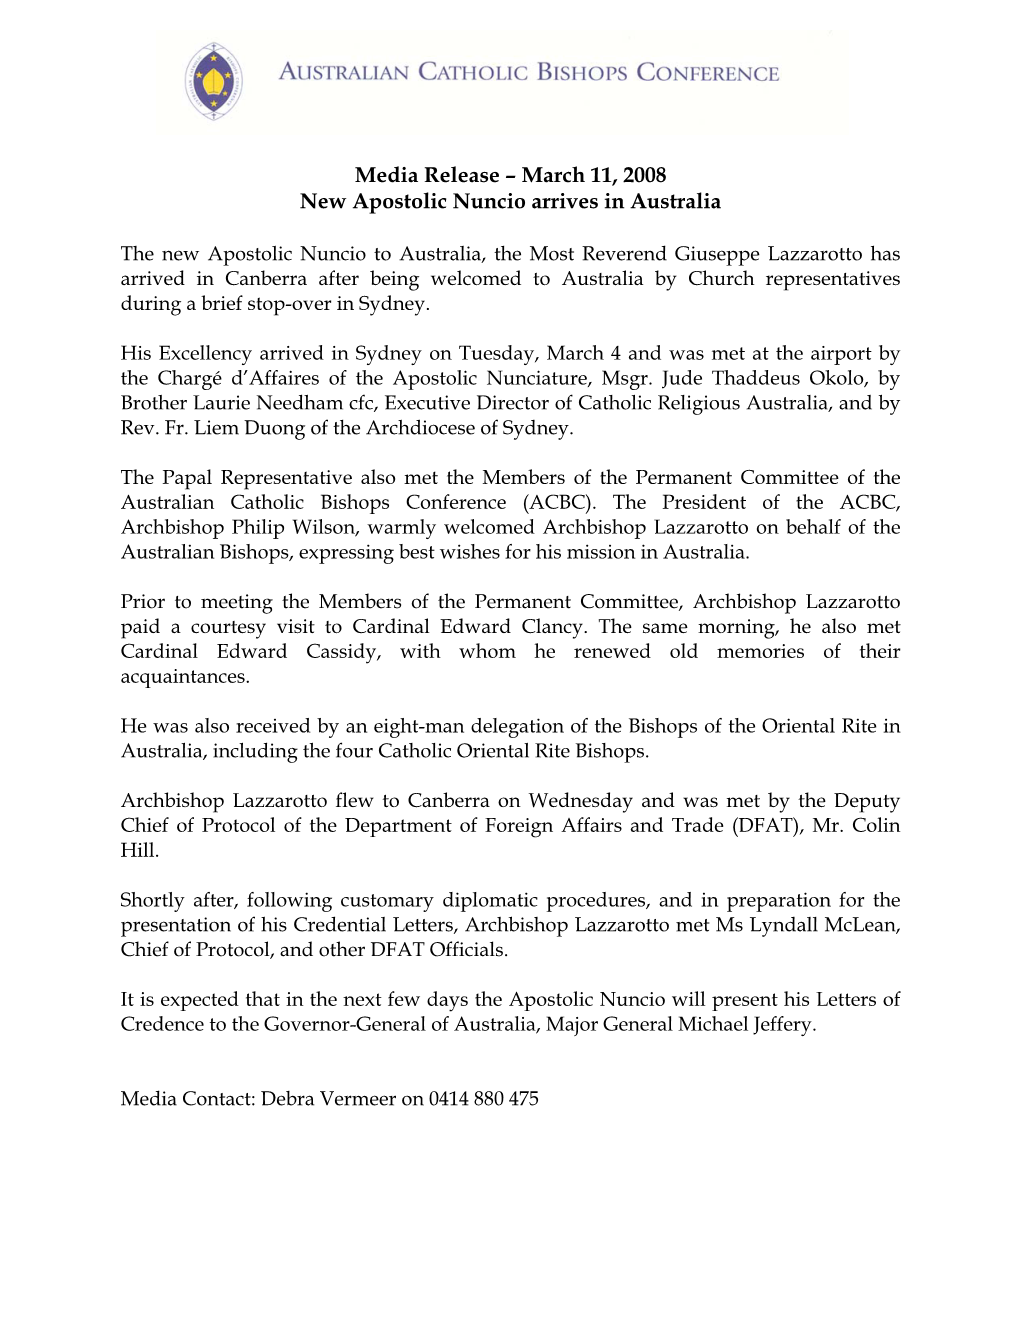 Media Release – March 11, 2008 New Apostolic Nuncio Arrives in Australia